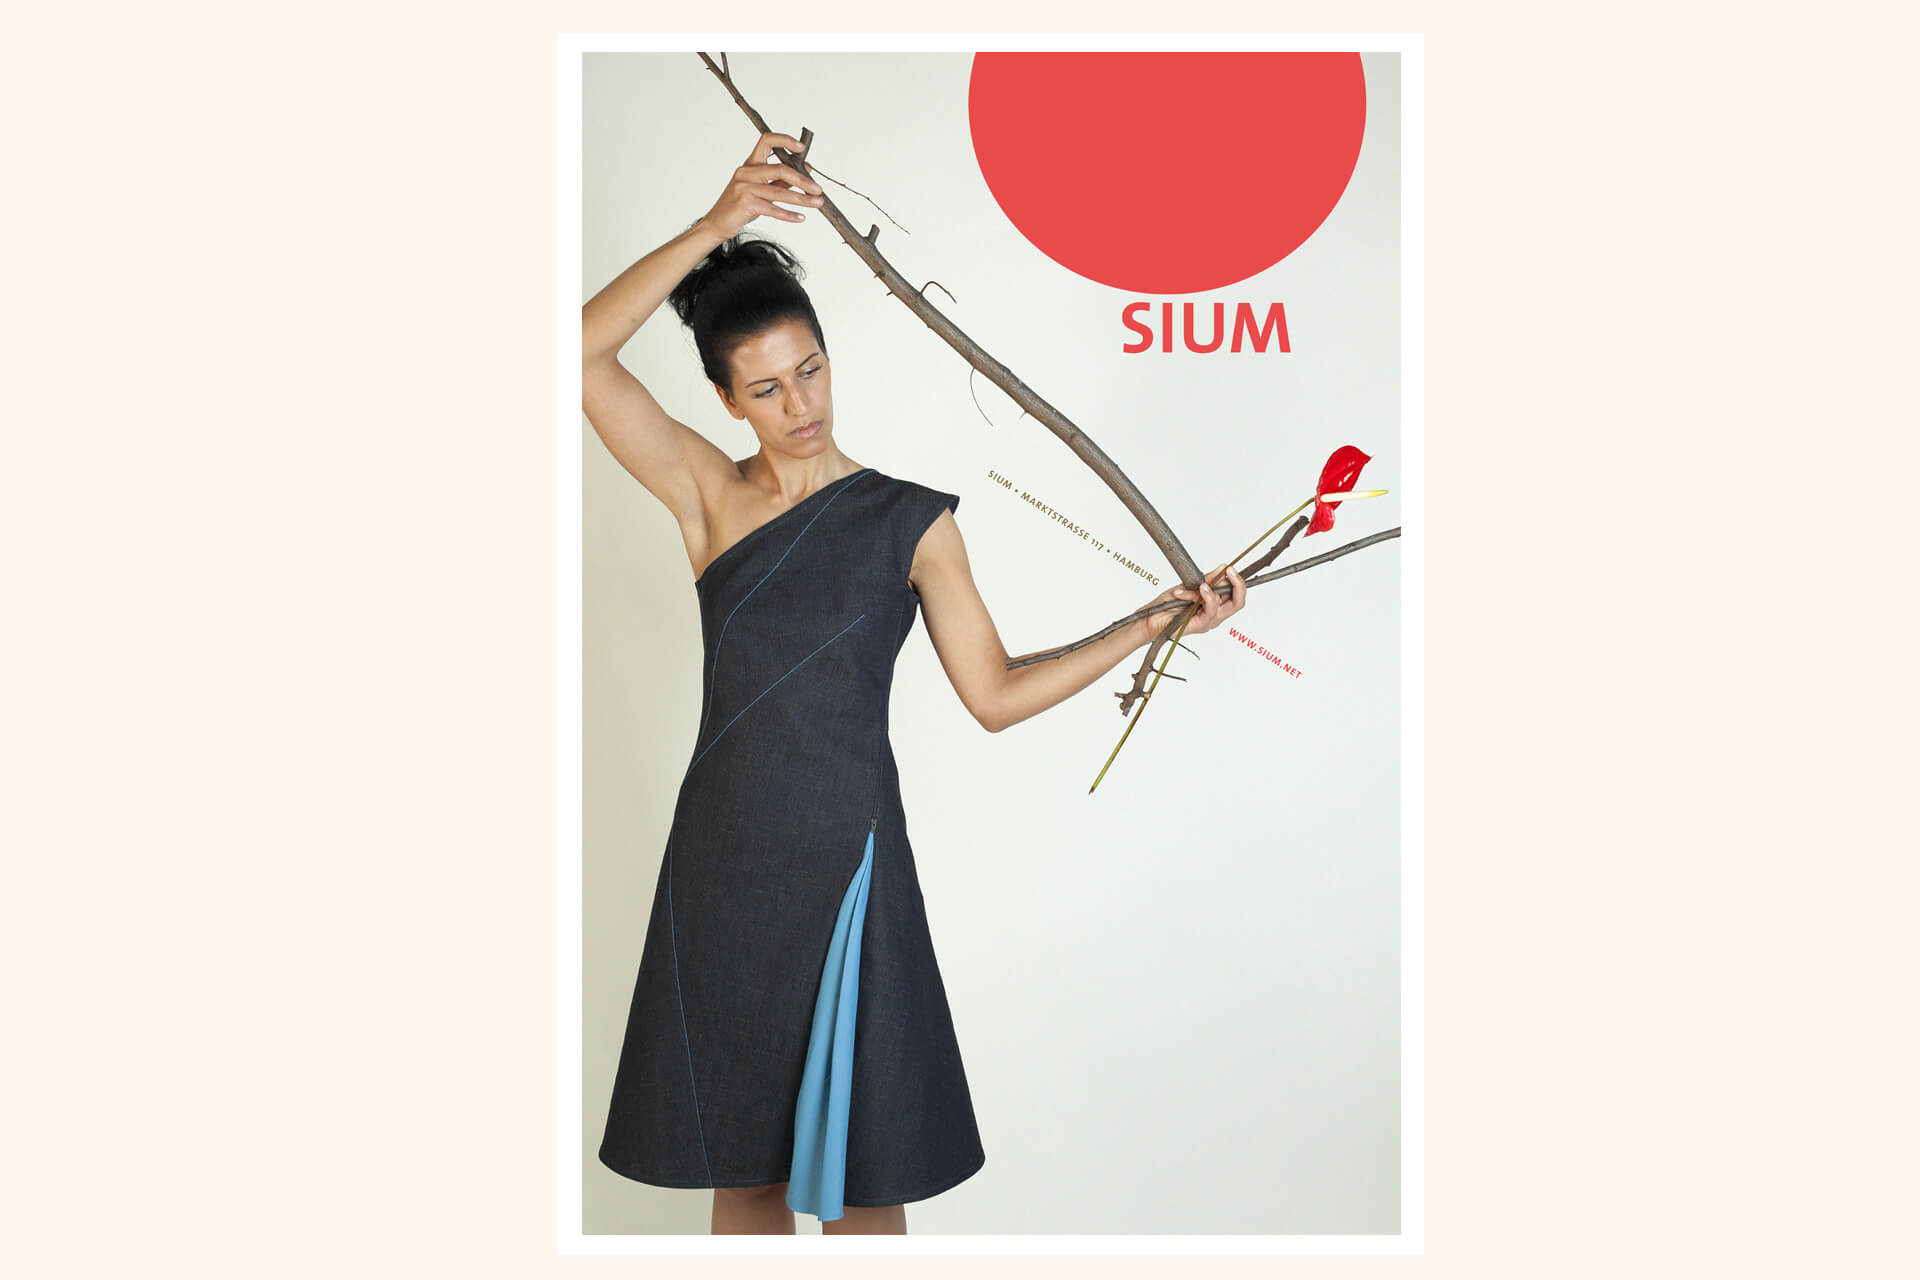 Detailfoto von einer Postkarte für Sium mit Porträt von der Modemacherin, Logo und Kartenrückseite